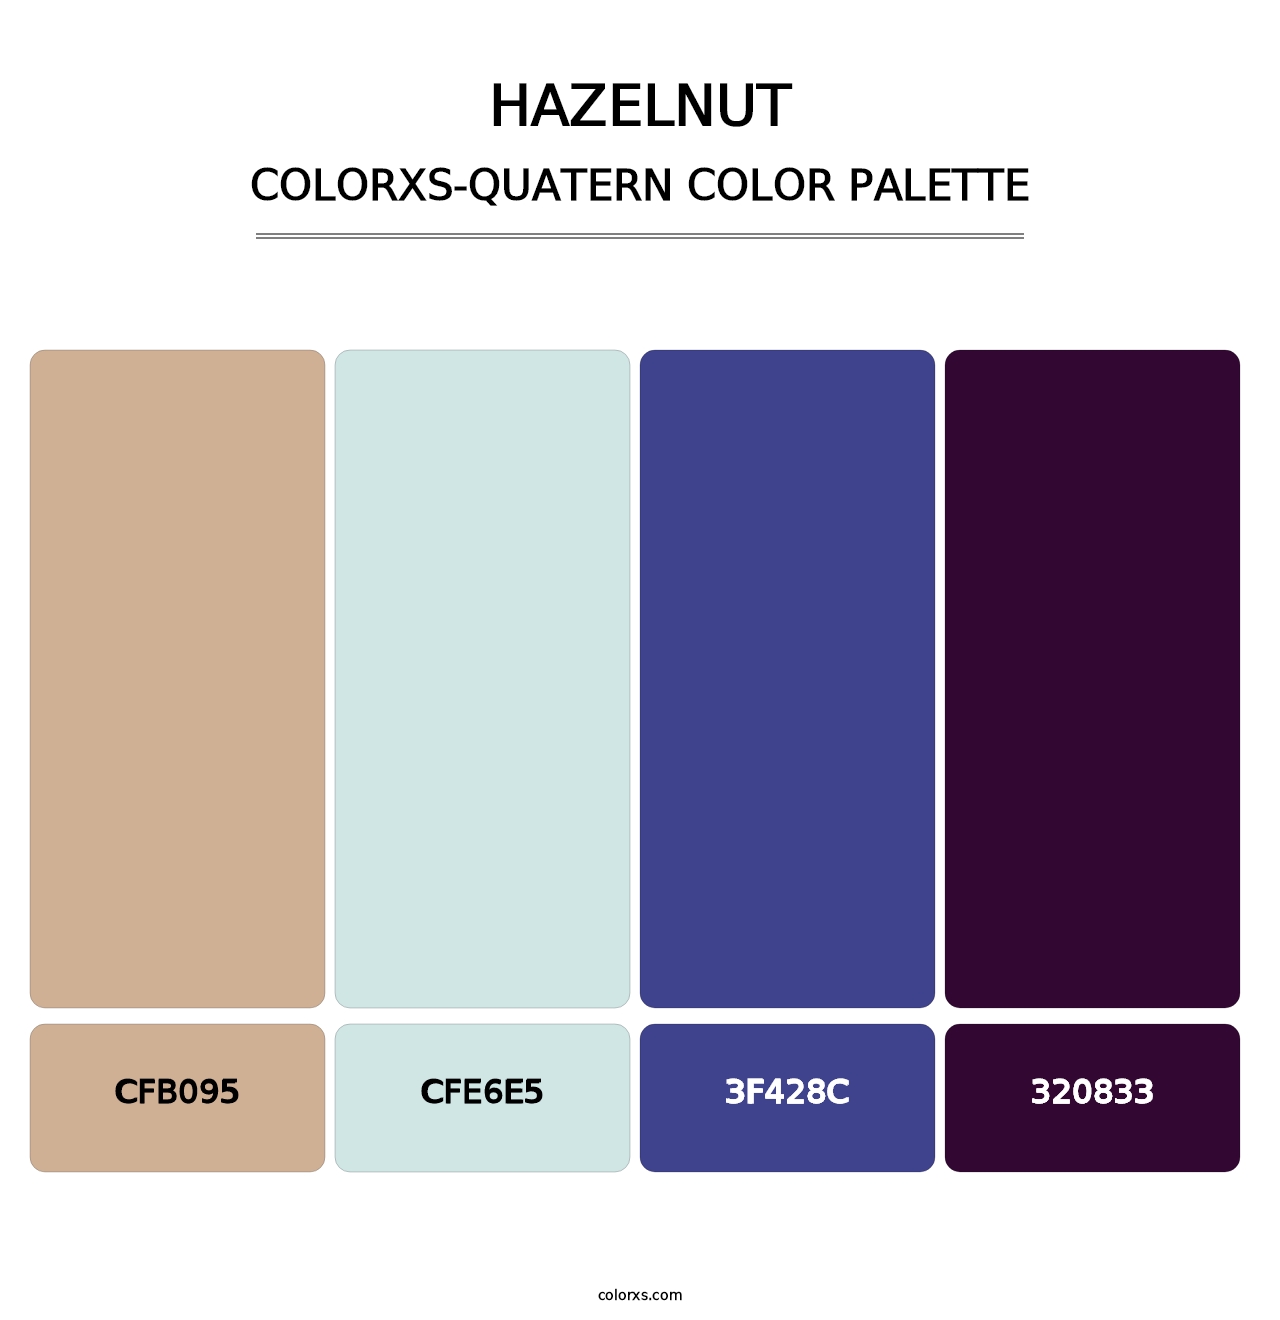 Hazelnut - Colorxs Quatern Palette